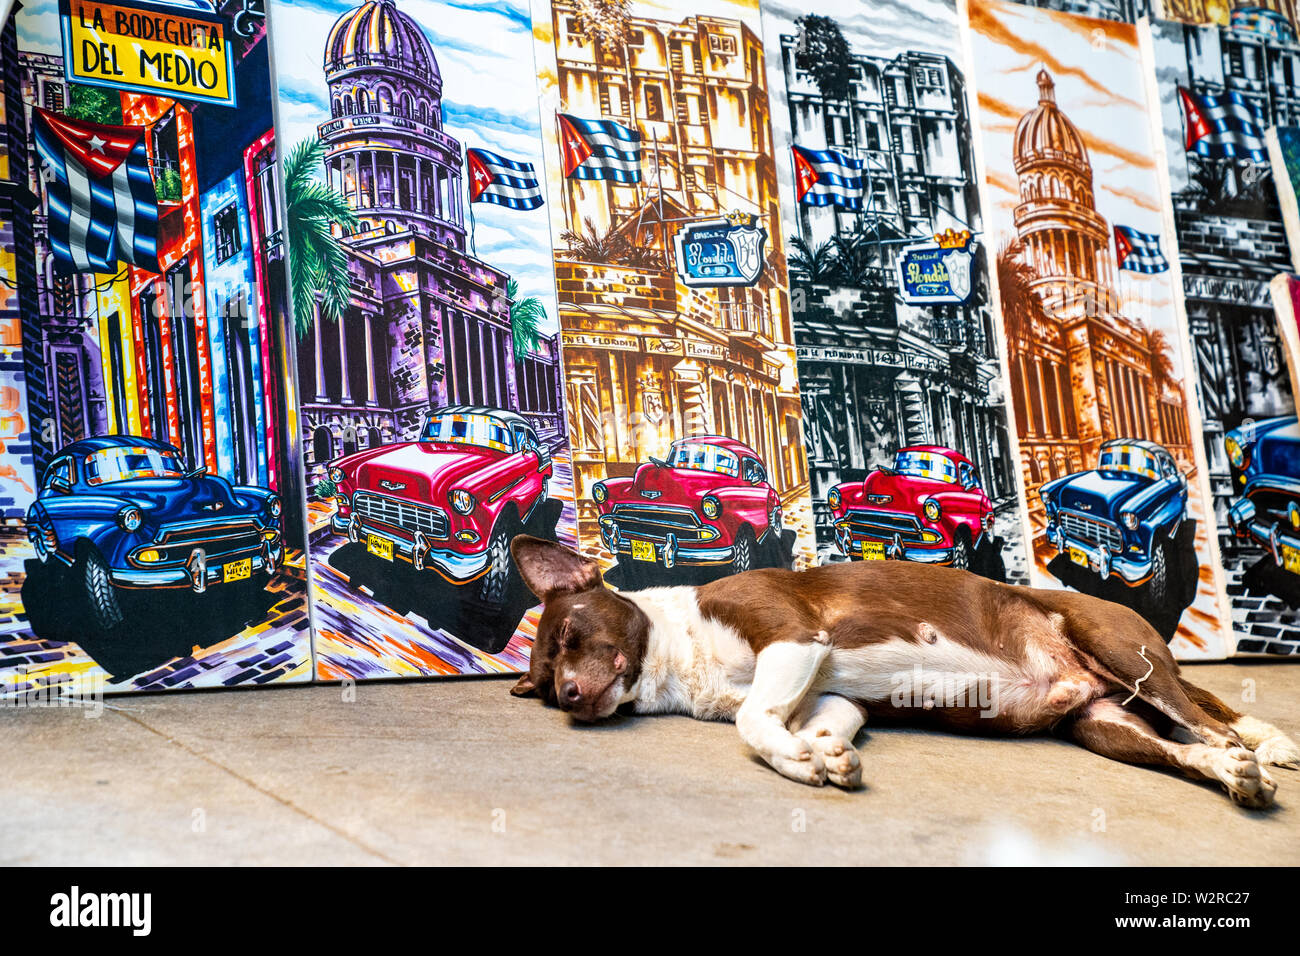 Plaza de la Catedral, Havana, Cuba - Gennaio 2, 2019: un cubano di cane è adagiata vicino bellissimi dipinti su tela di artisti cubani. Foto Stock